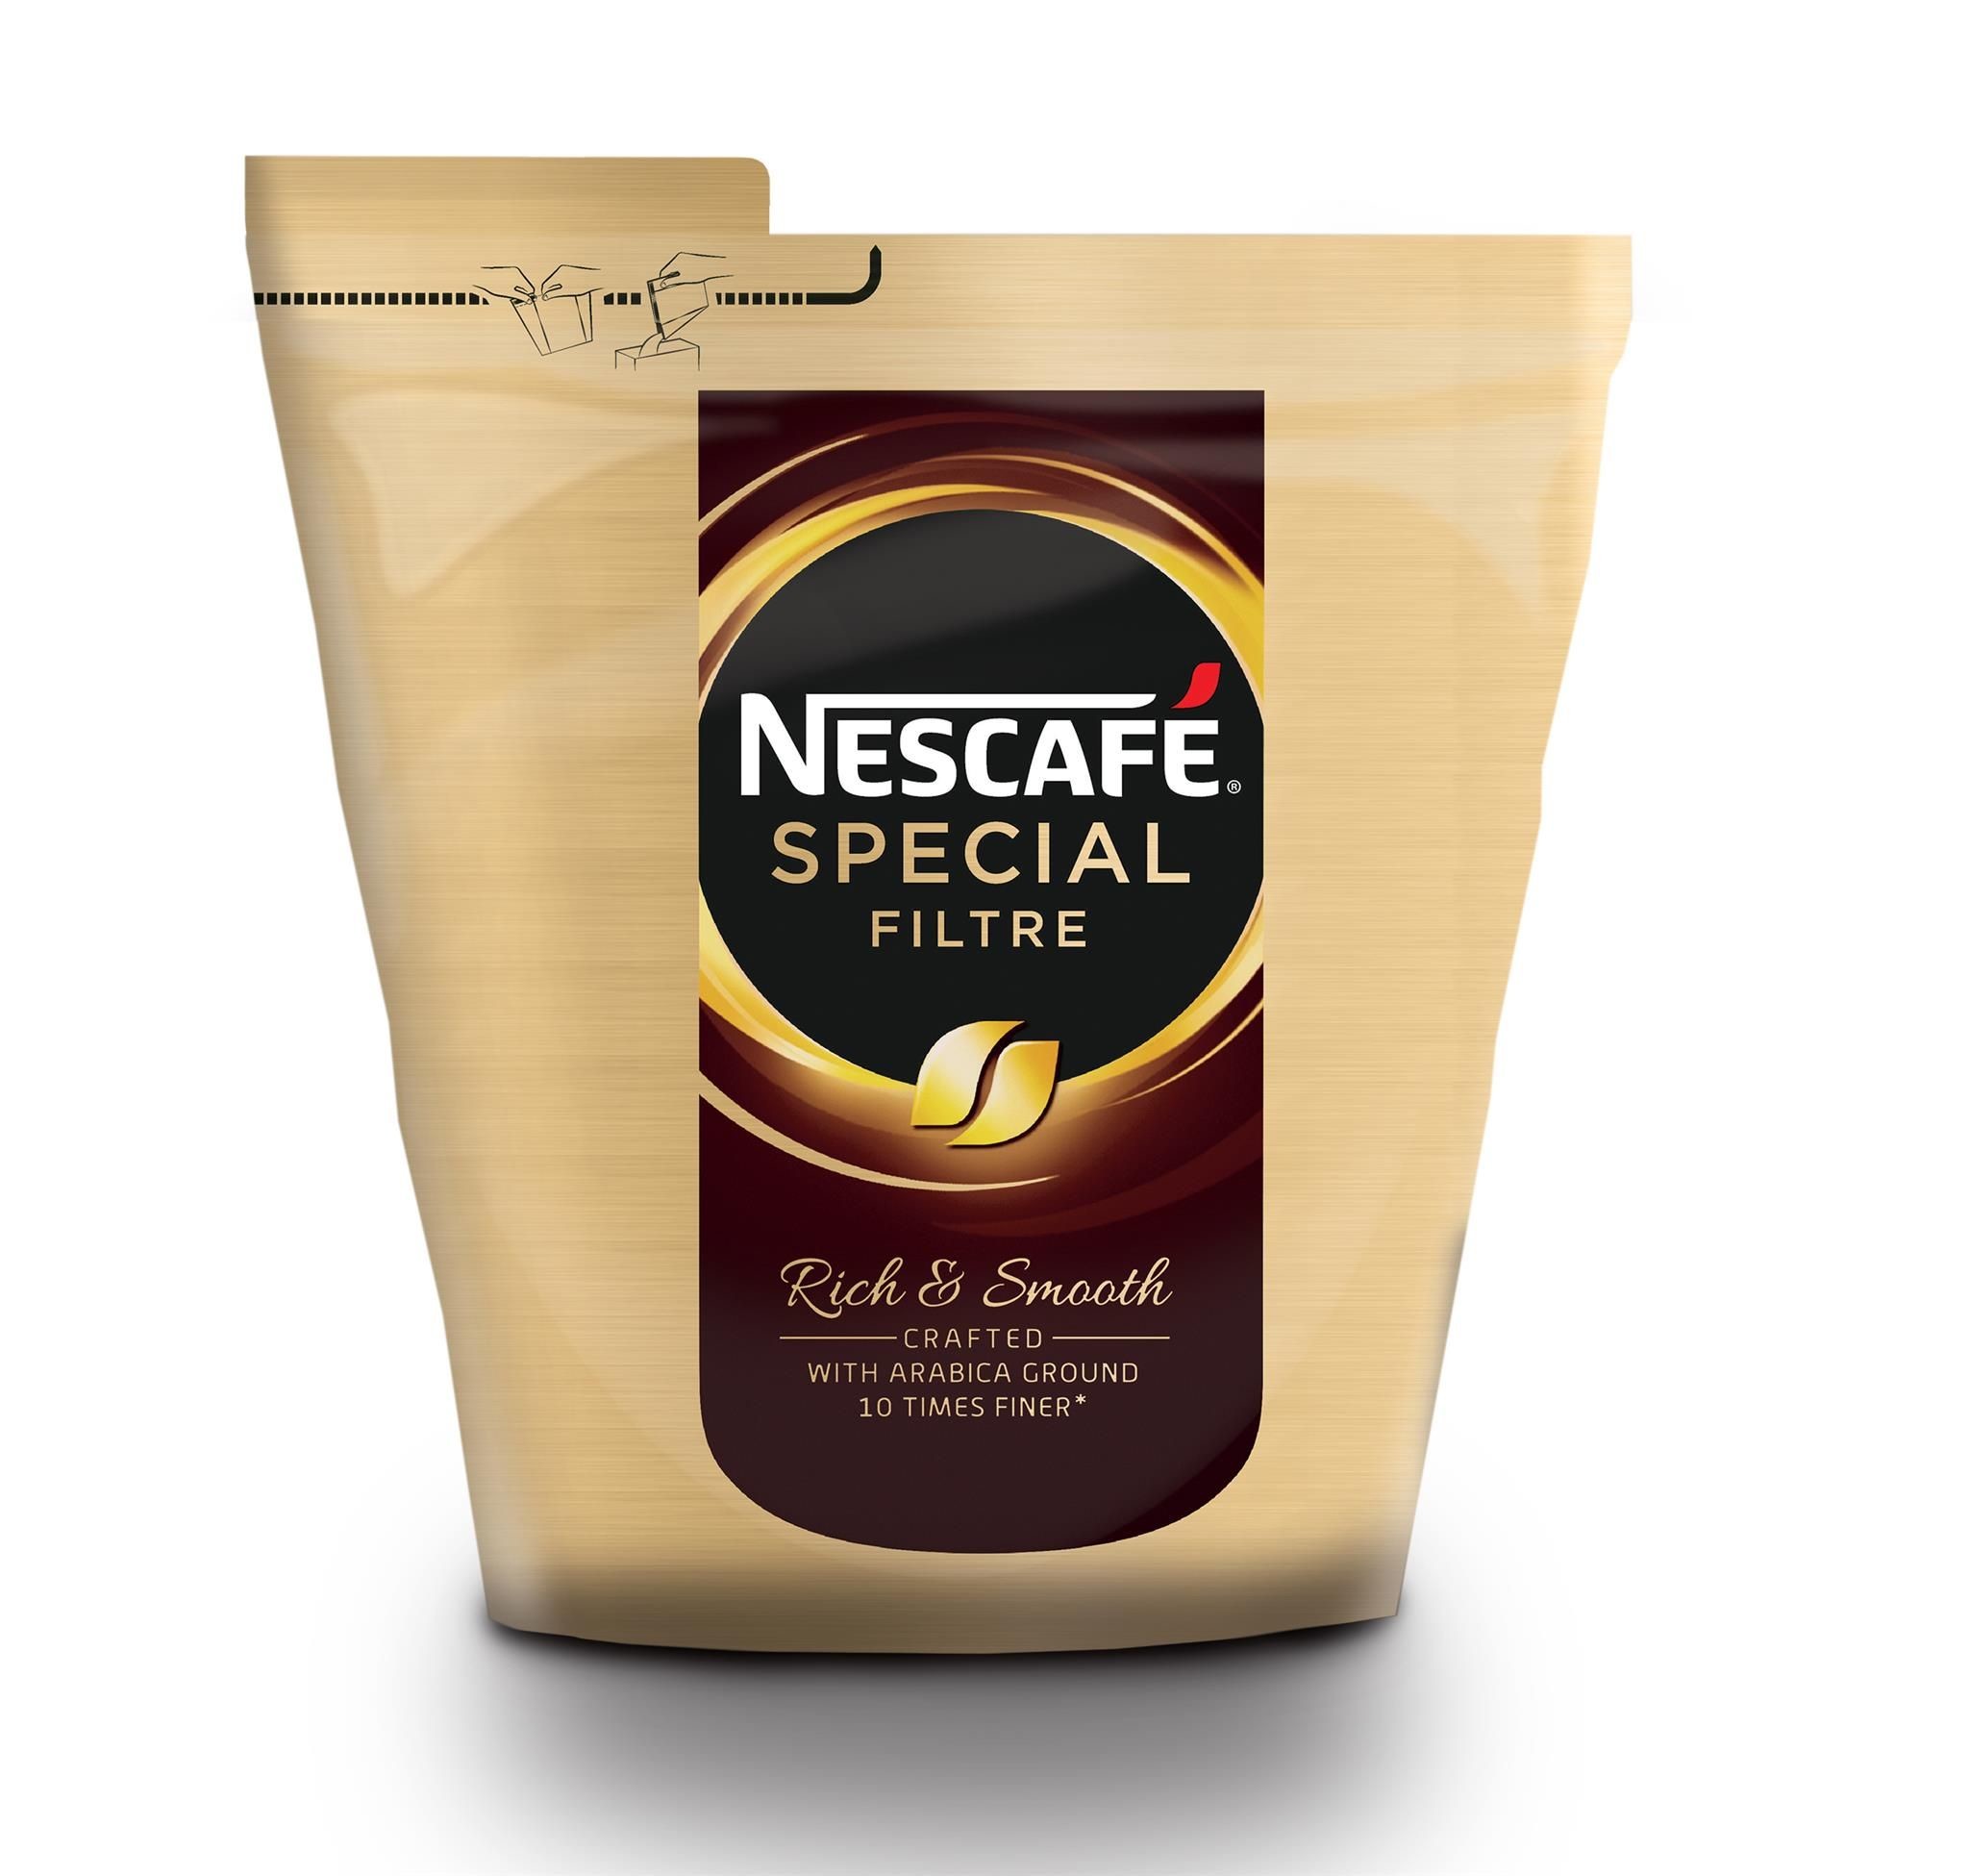 Nestlé Nescafé Cafe Special Filtre 500gr Vending